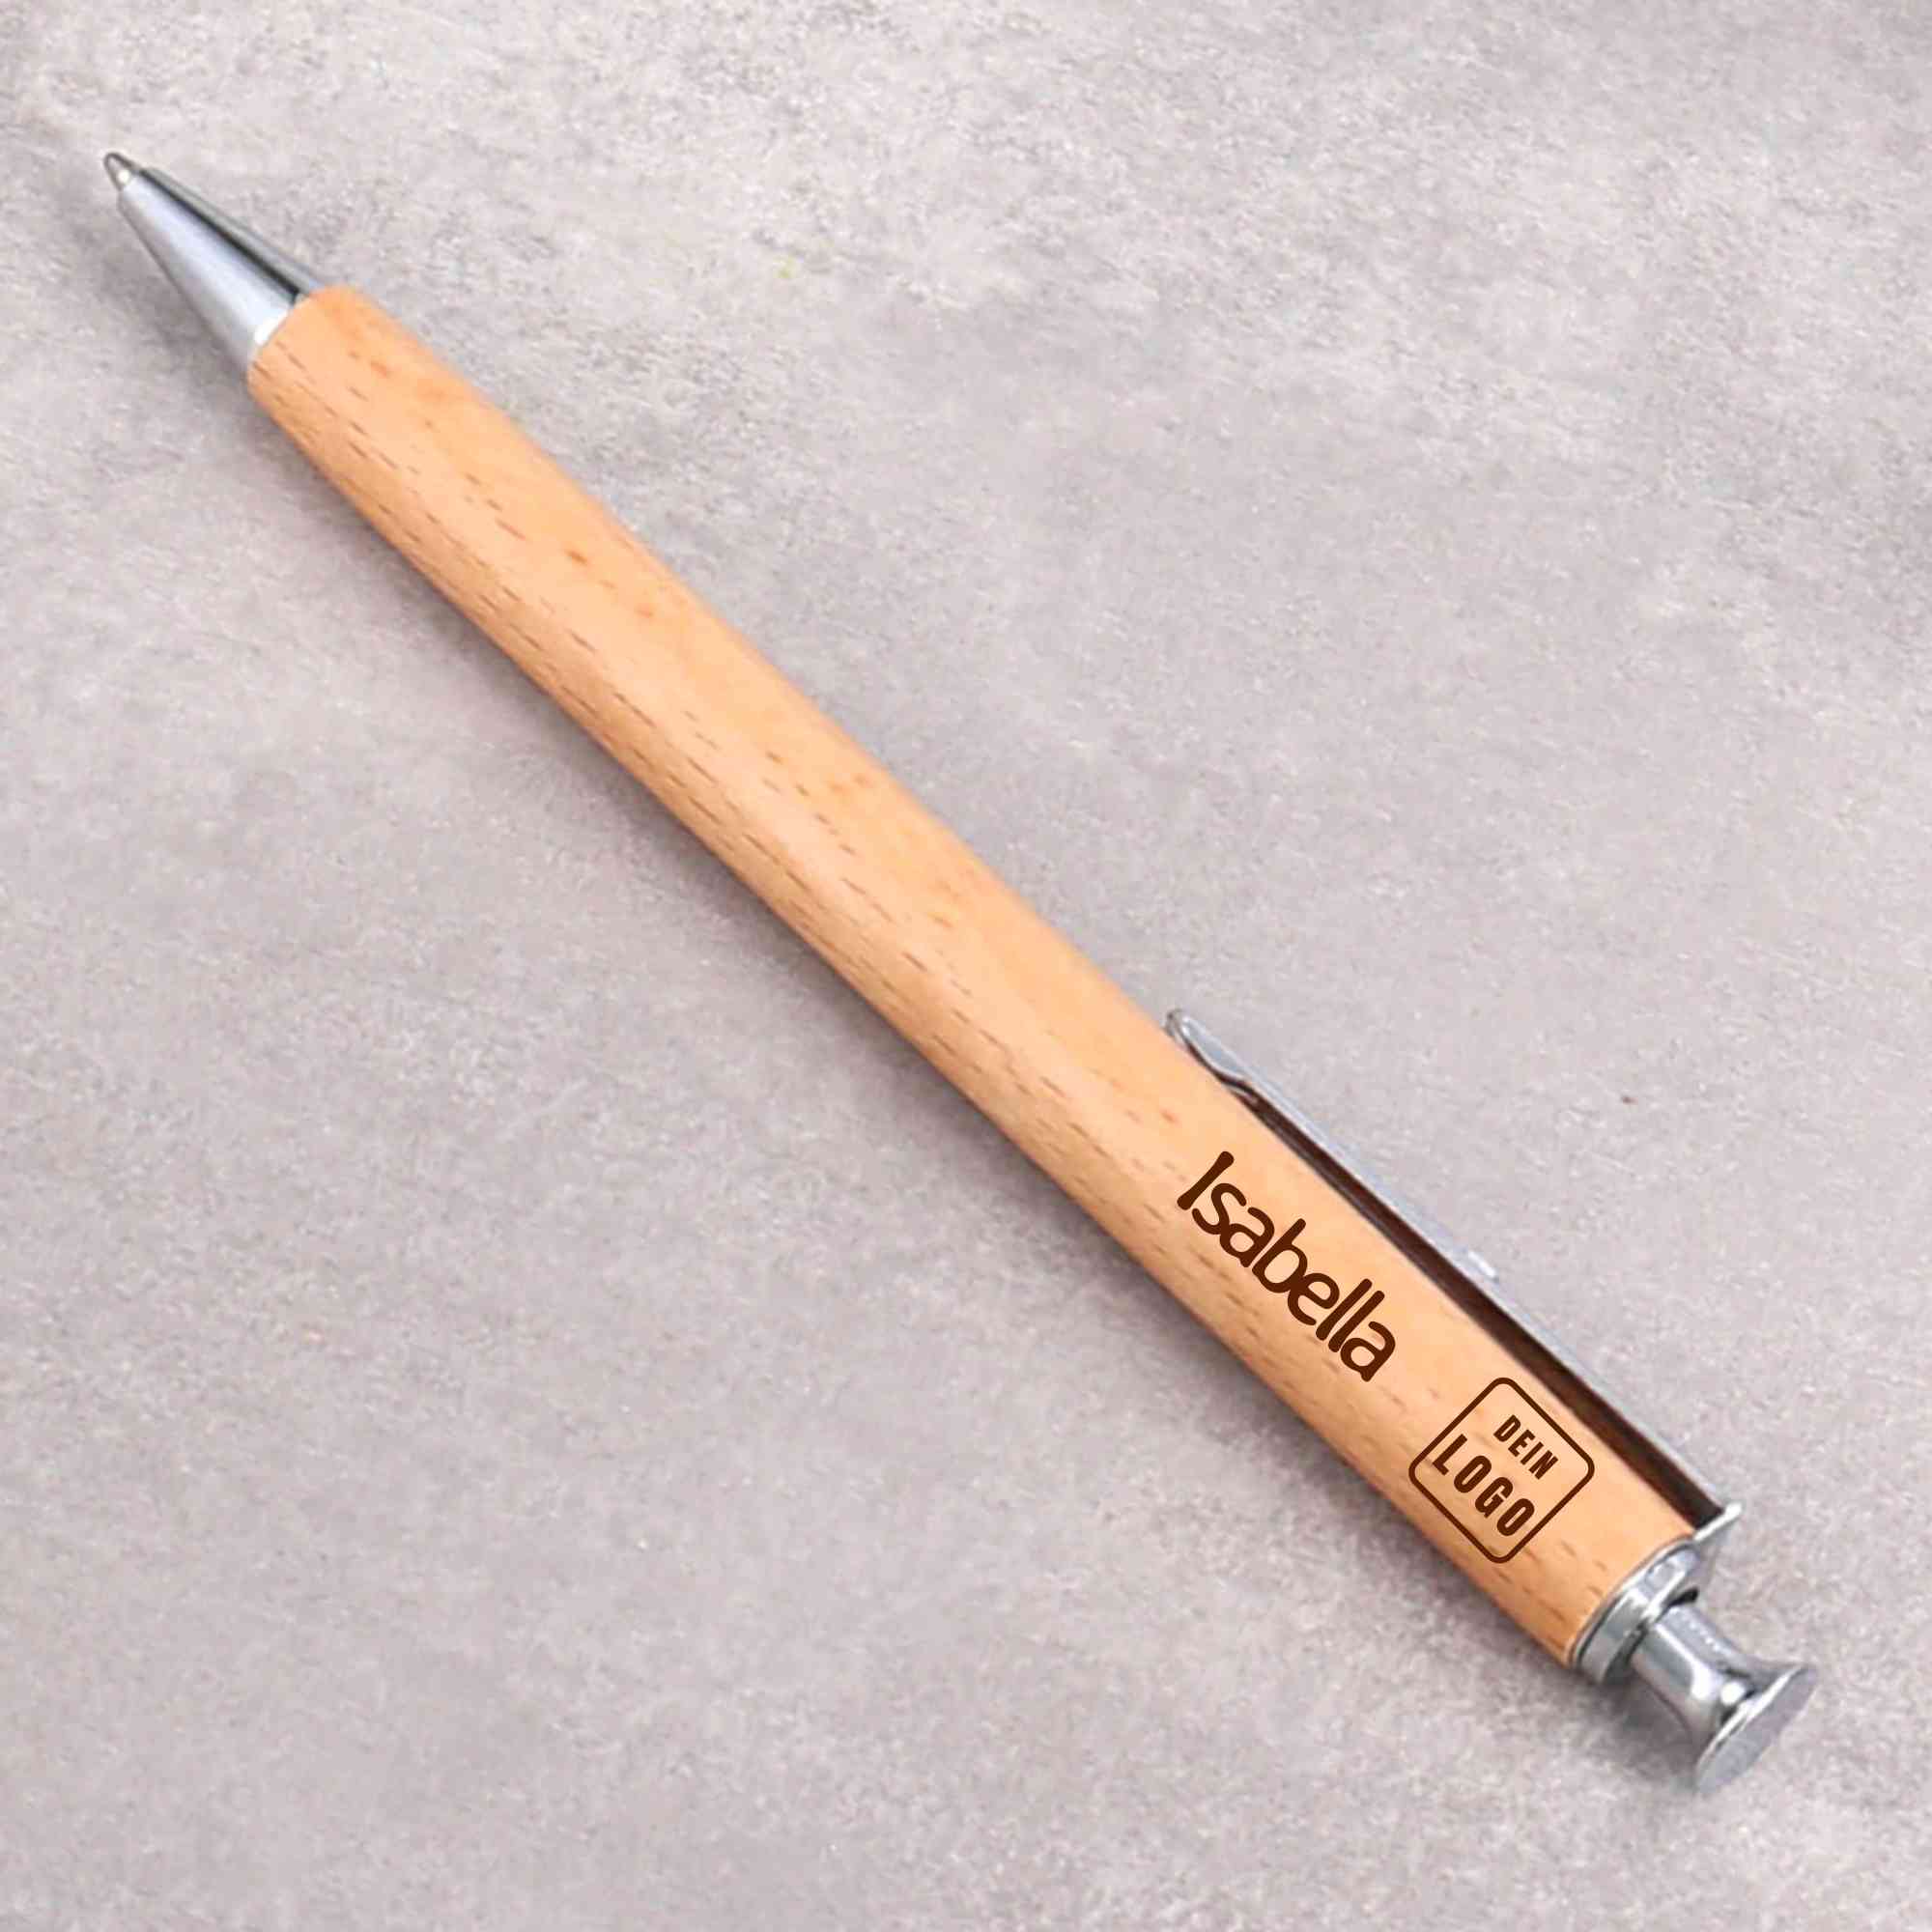 Firmengeschenk, Kundengeschenk, Werbegeschenk oder Mitarbeitergeschenk  als Kugelschreiber mit Namen und eigenem Logo nach Wunsch in das Holz des Kugelschreibers graviert